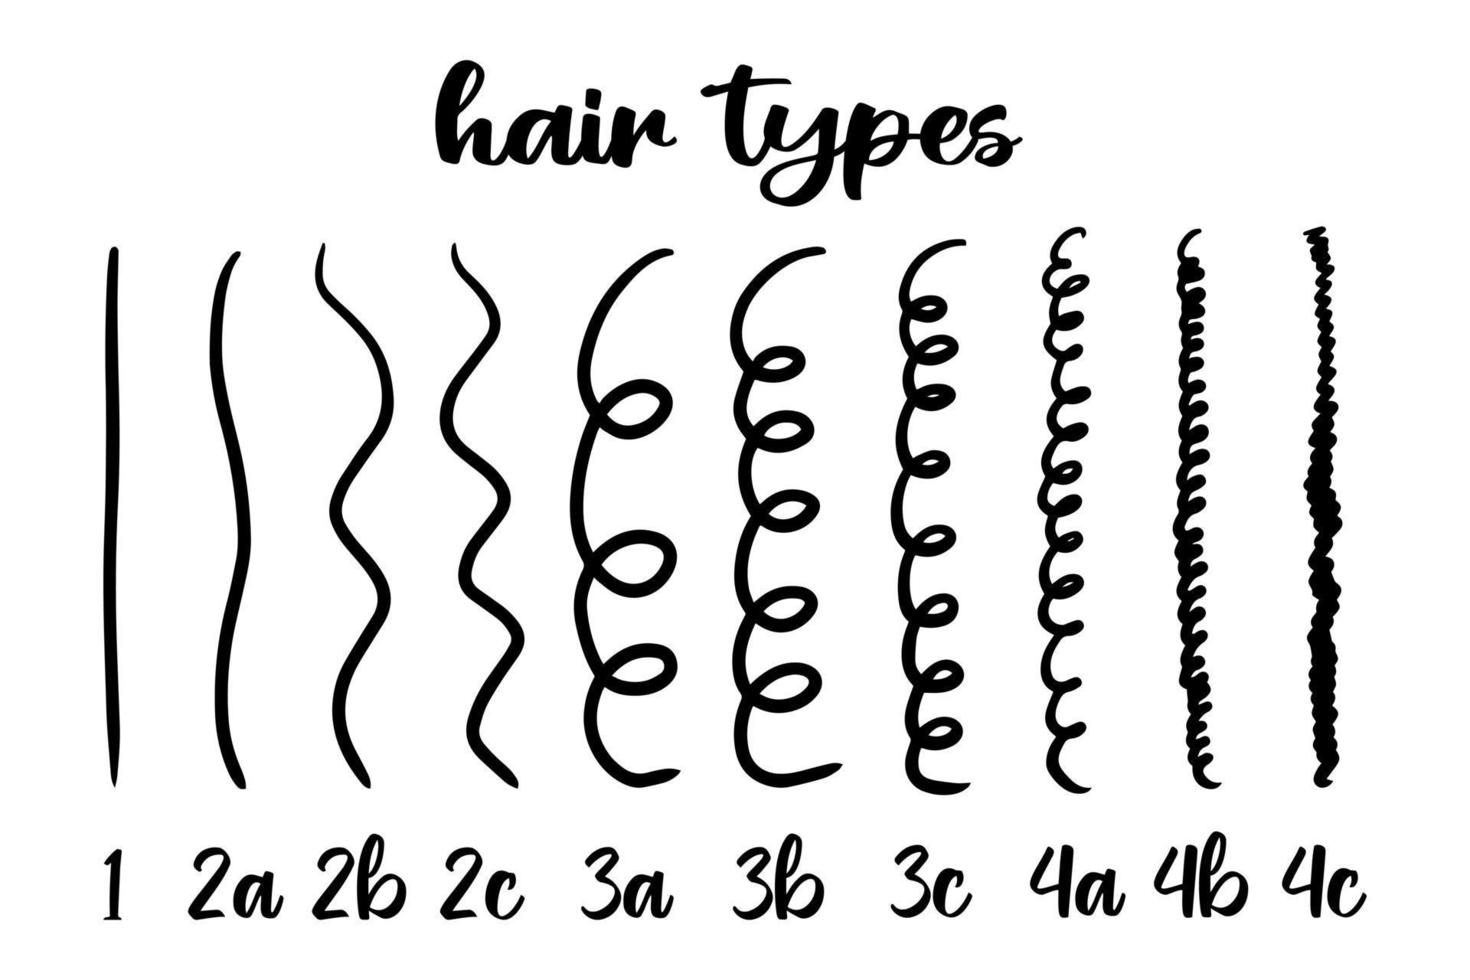 guia de tipo de cabelo com etiquetas. classificação de padrões de ondulação vetor